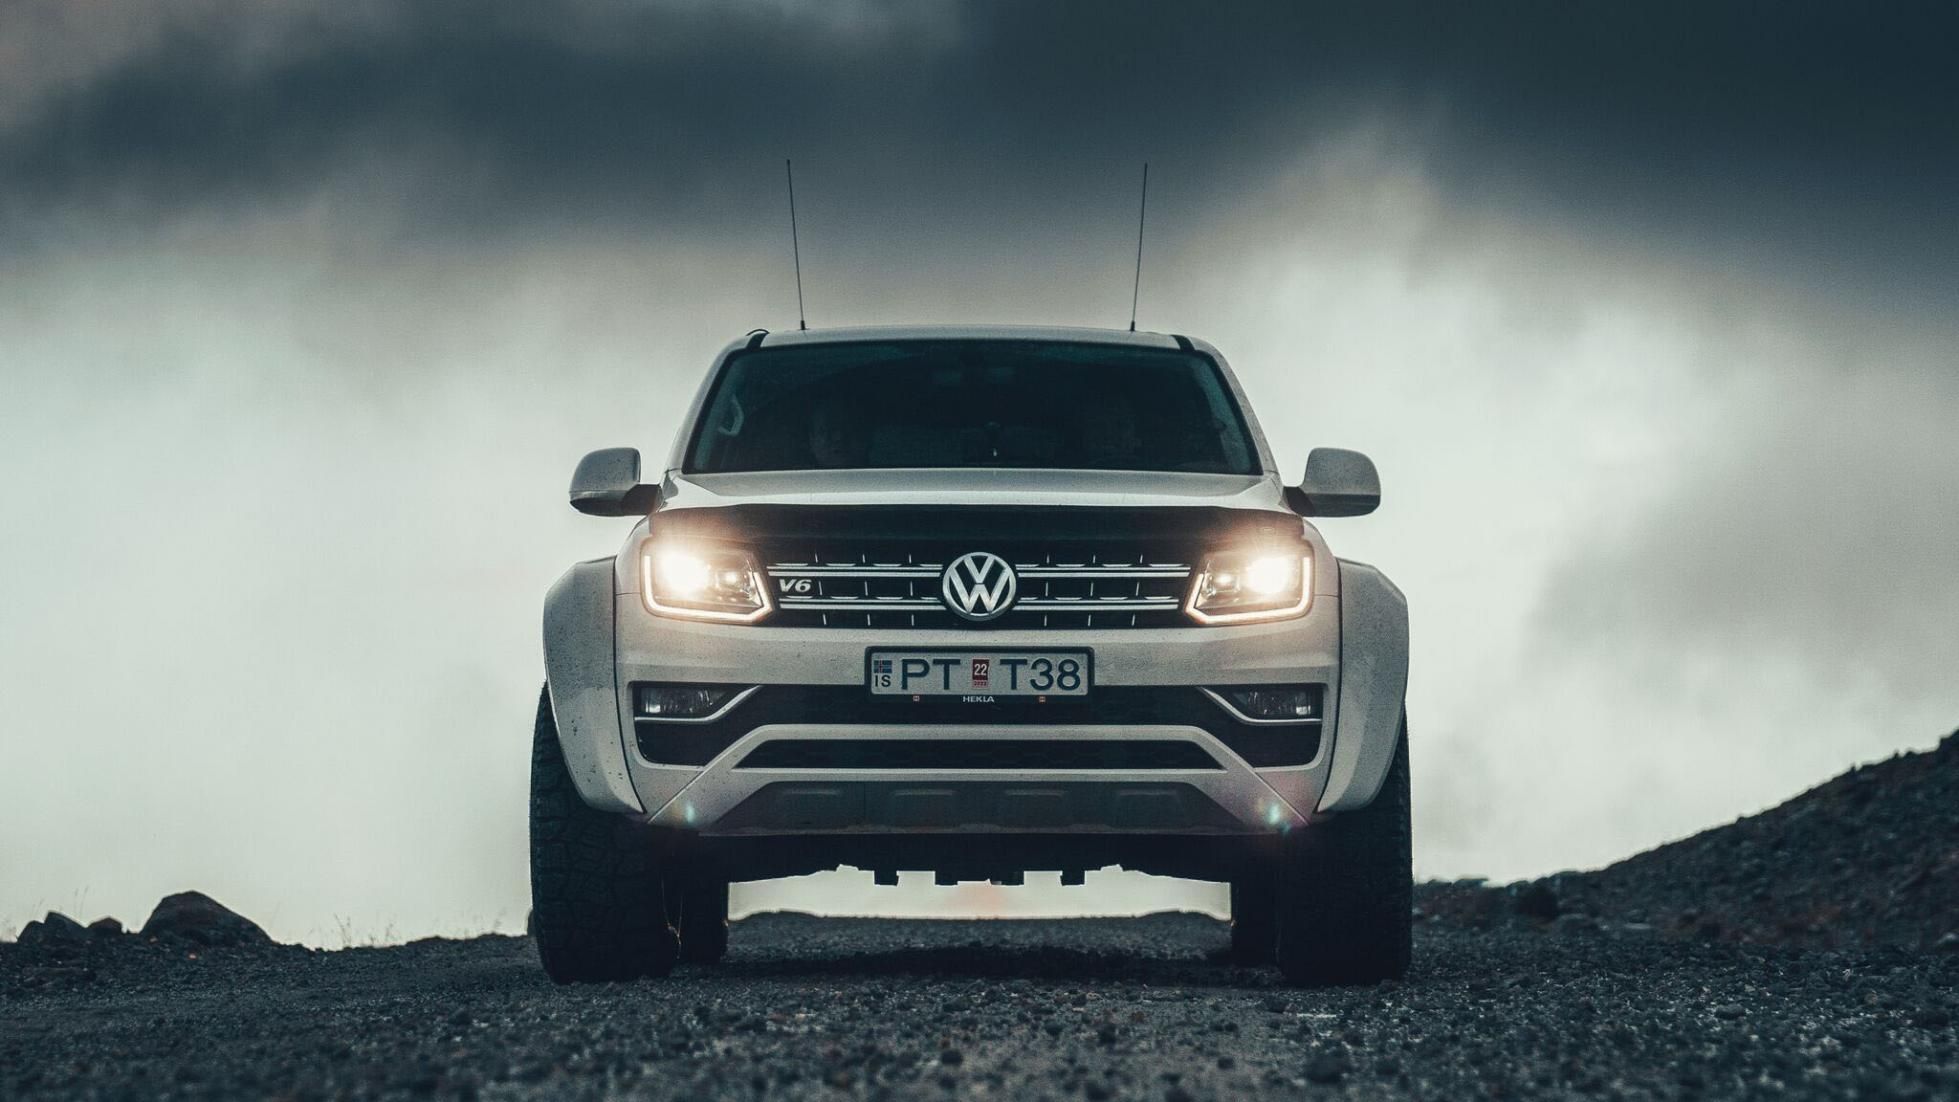 2019 Volkswagen Amarok by Arctic Trucks